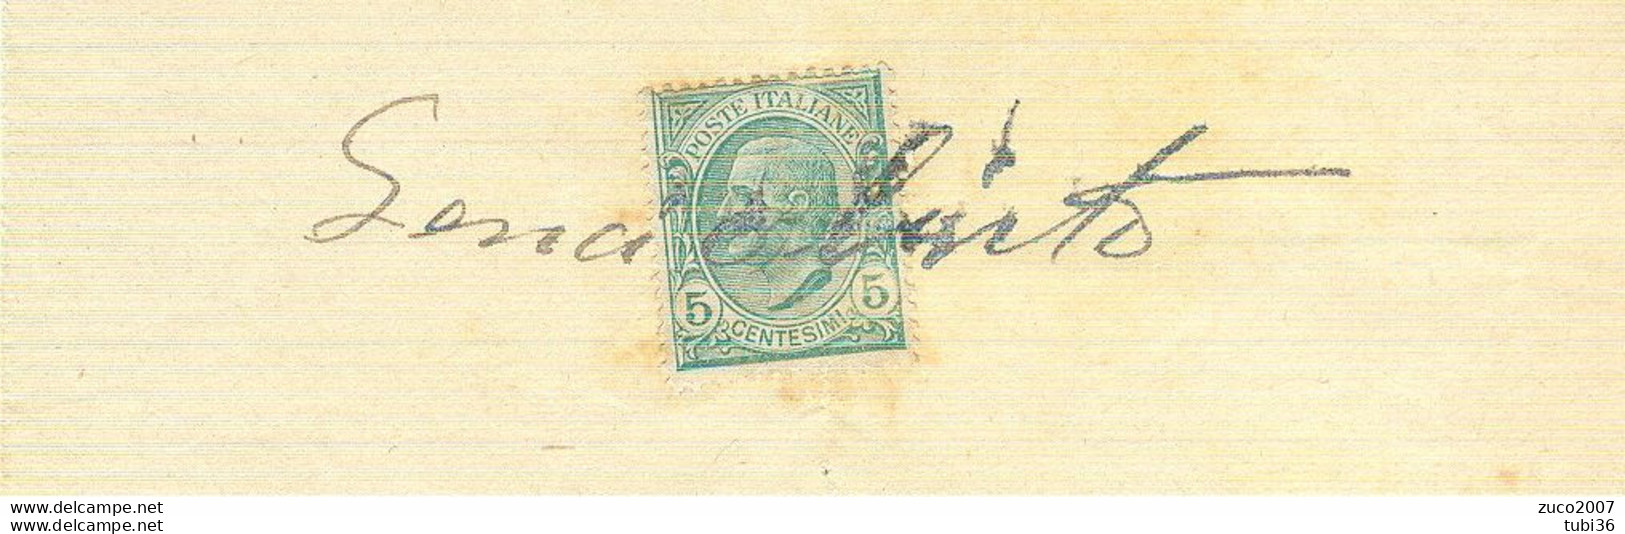 VITTORIO EMANUELE III Cent.5 (s81),SU RICEVUTA PRIVATA,anno 1914,USO MARCA DA BOLLO, - Fiscales